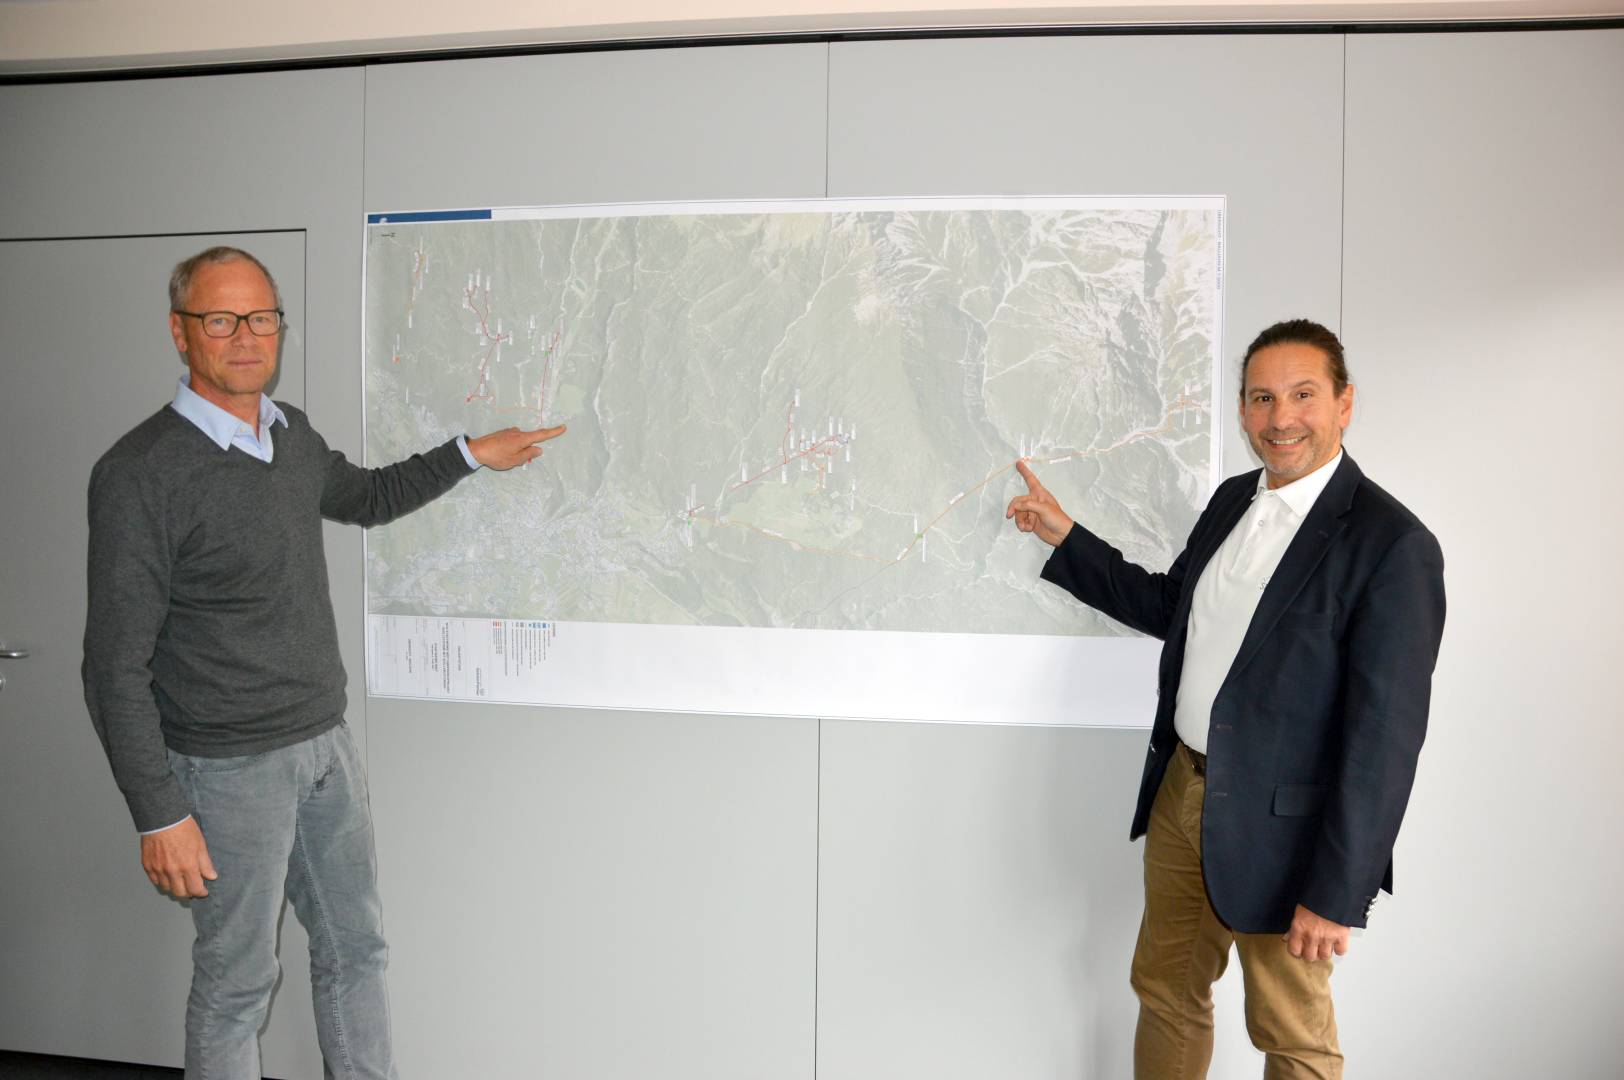 Zwei Männer zeigen auf eine Karte an der Wand.